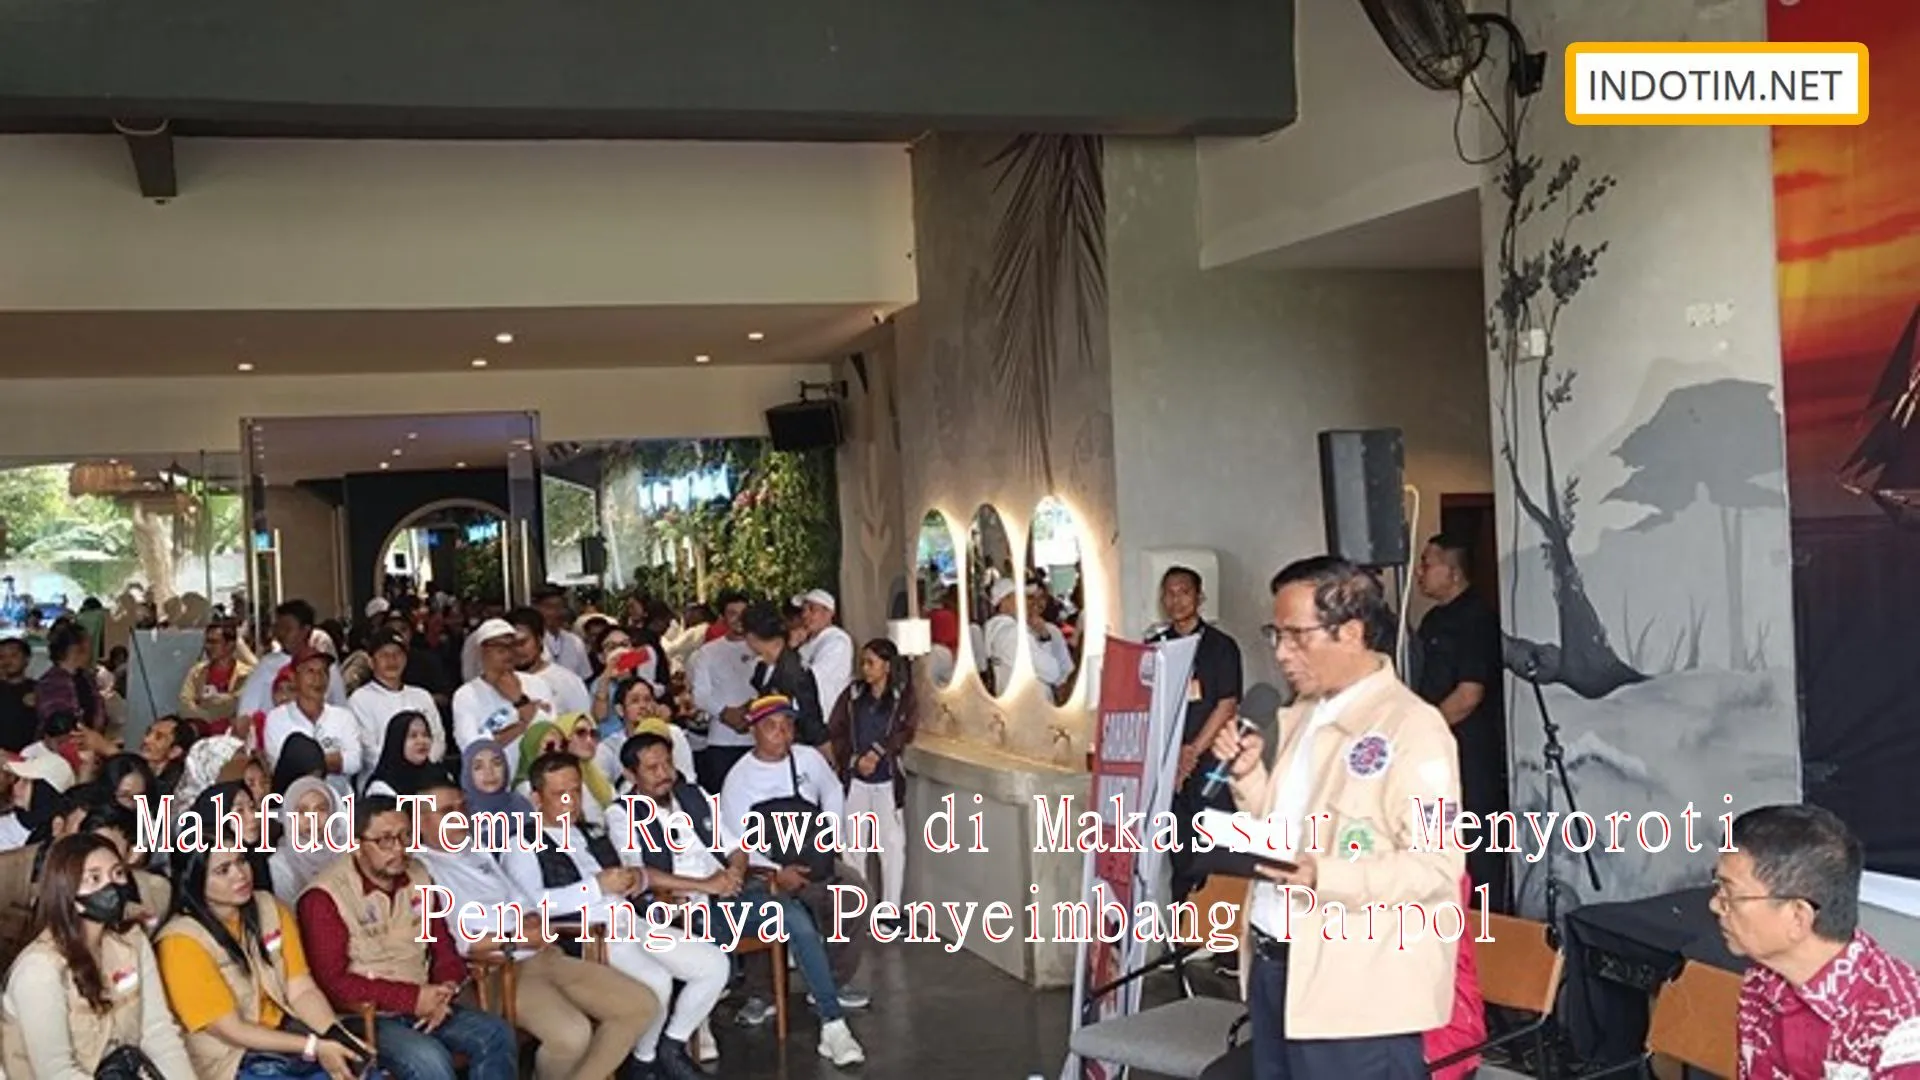 Mahfud Temui Relawan di Makassar, Menyoroti Pentingnya Penyeimbang Parpol